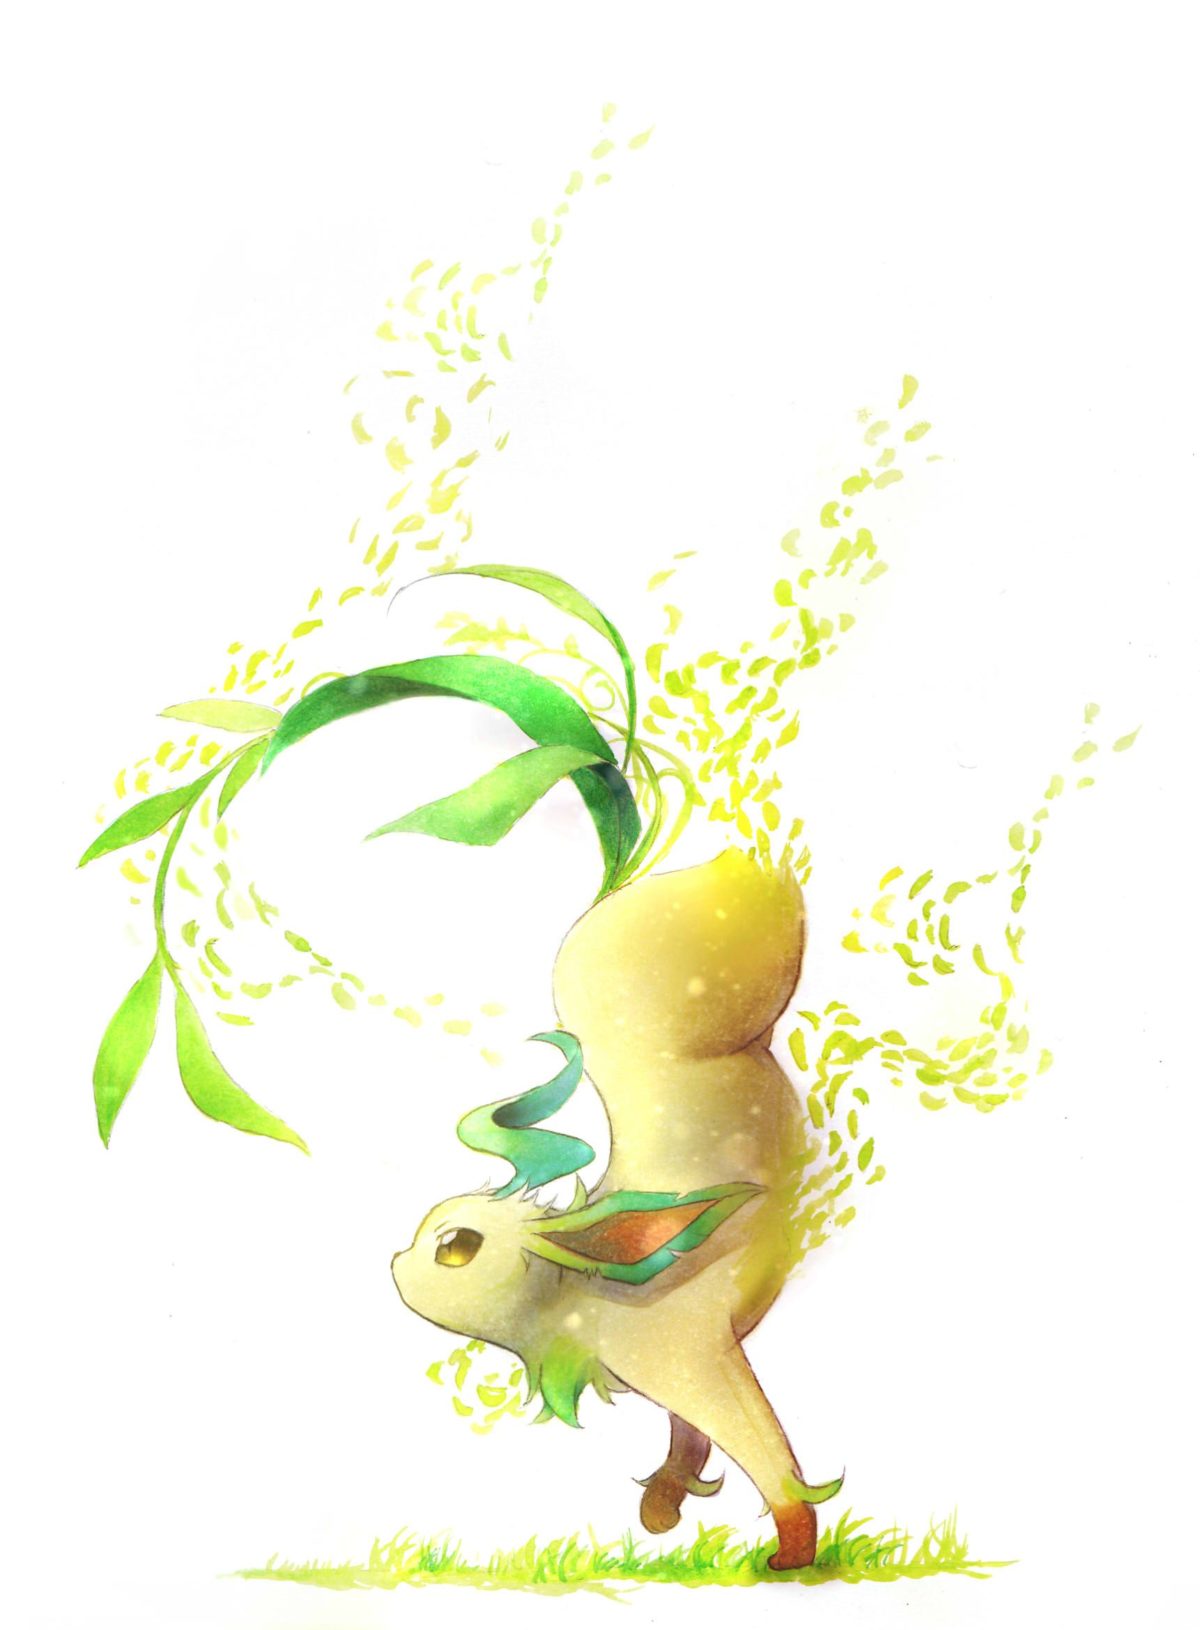 Leafeon – Pokémon – Mobile Wallpaper #2120321 – Zerochan Anime Image …